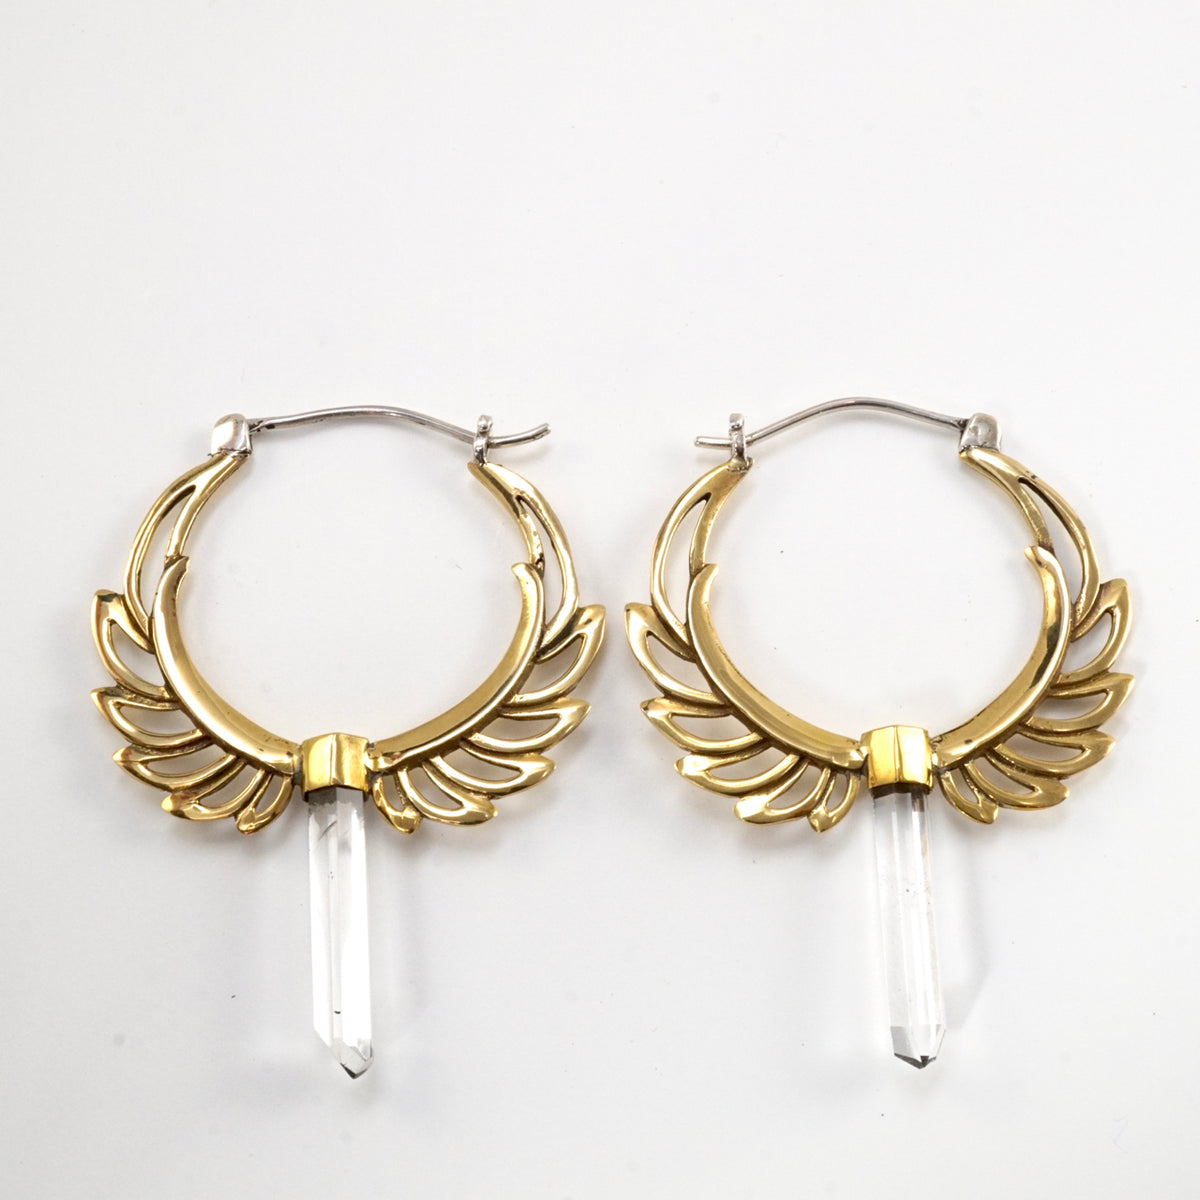 Feather Hoop Earrings - Clear Quartz Points - Boho Earrings - Moon Goddess Earrings - Angel Wing - Gift for a Goddess - Gift for Her (090B)